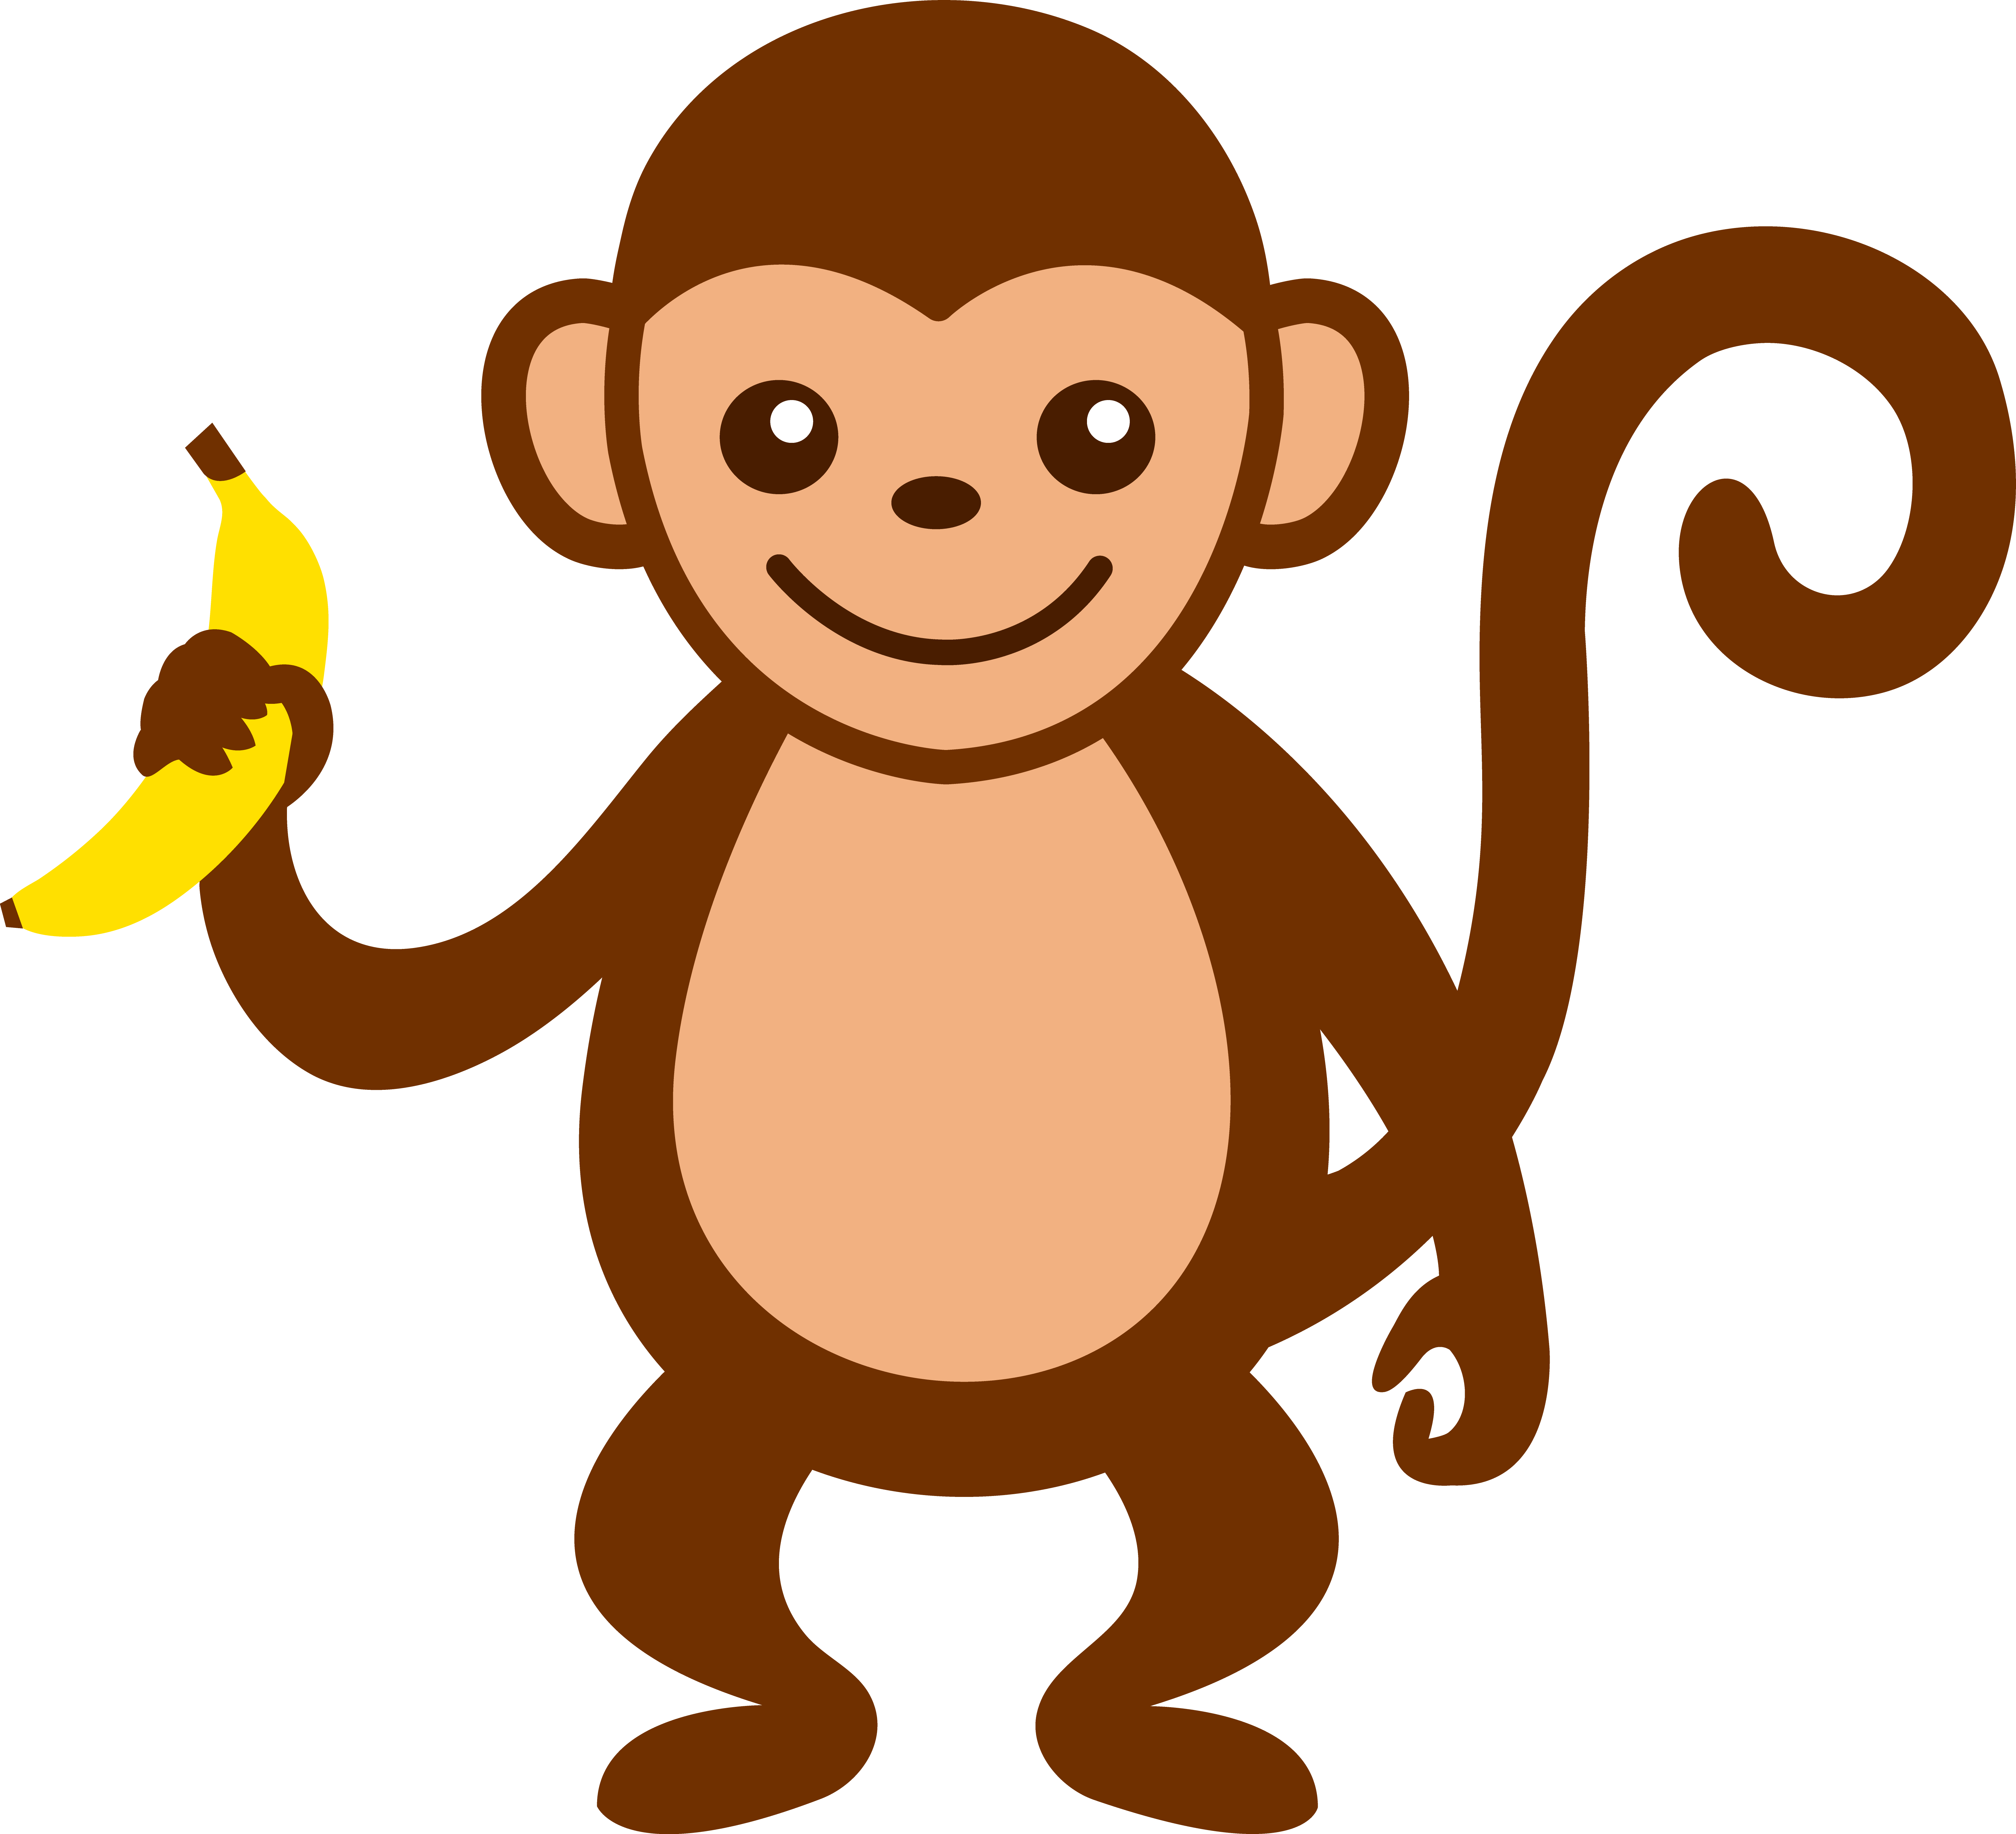 Monkey banana clipart - Clipa - Clipart Monkey